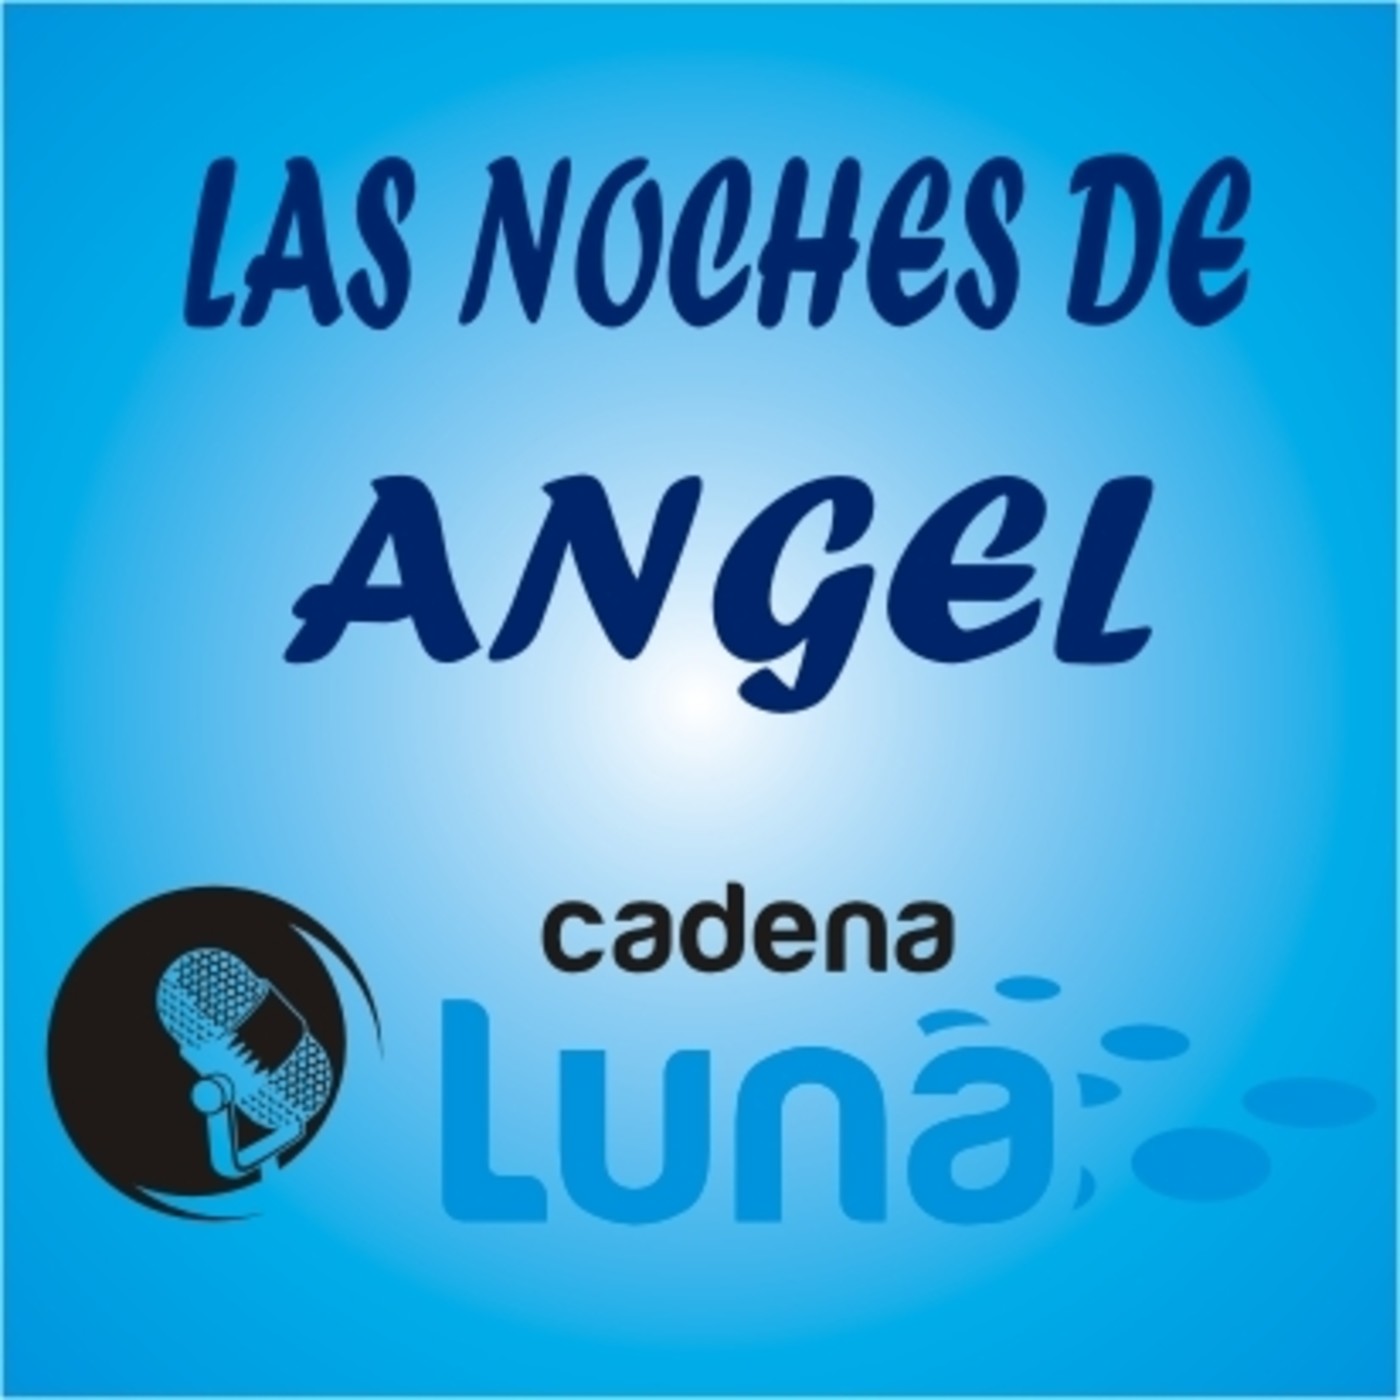 Las noches de Angel cadena luna - 06 - 06 - 23